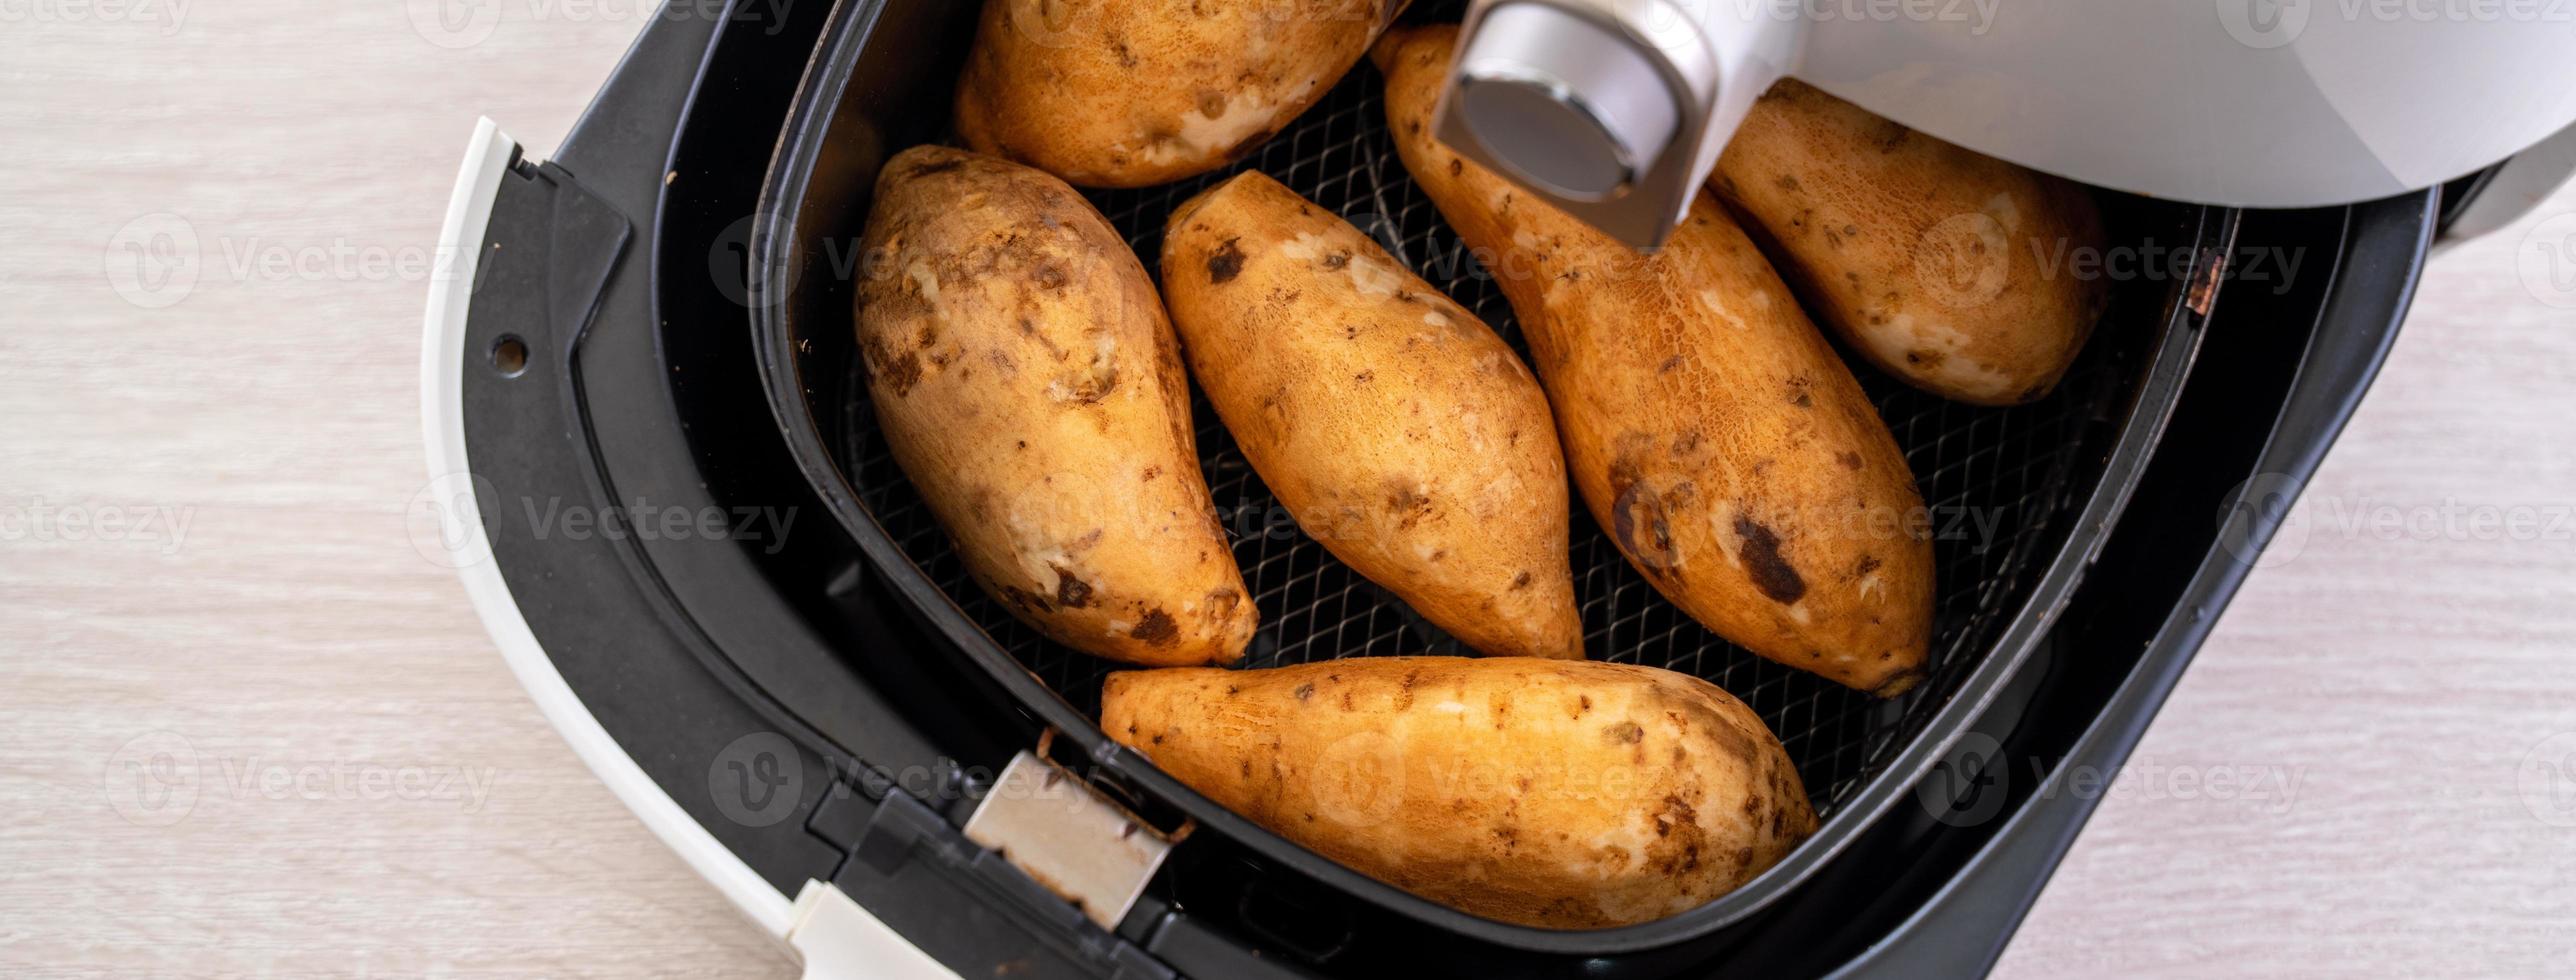 geroosterde zoete aardappel thuis gekookt in de airfryer. gezond voedsel voor dieet eten. foto